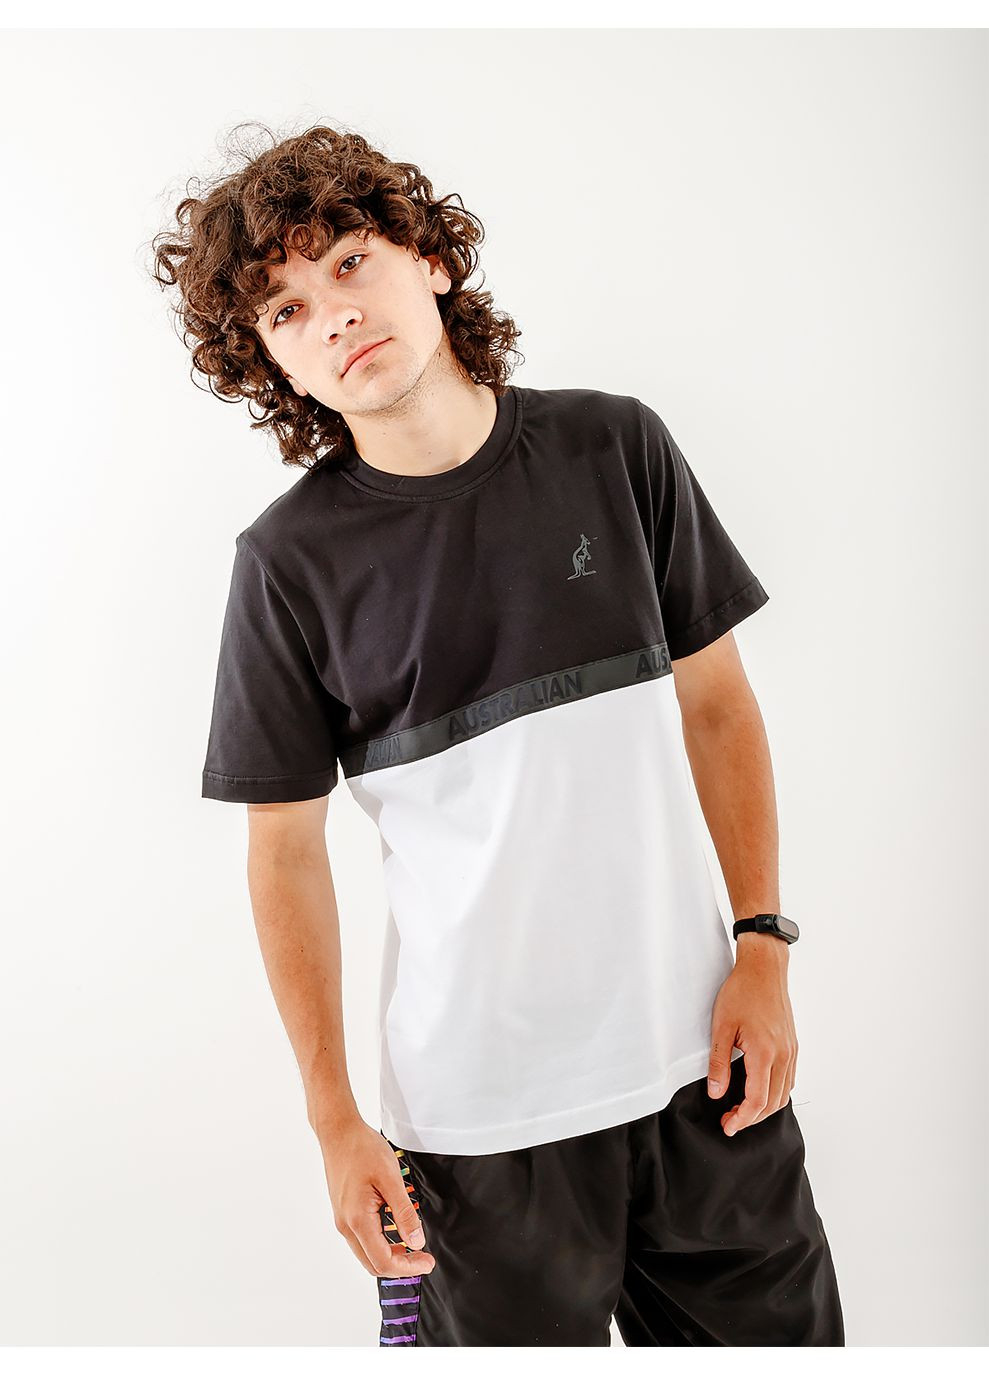 Комбинированная мужская футболка impact color block cotton t-shirt комбинированный m Australian